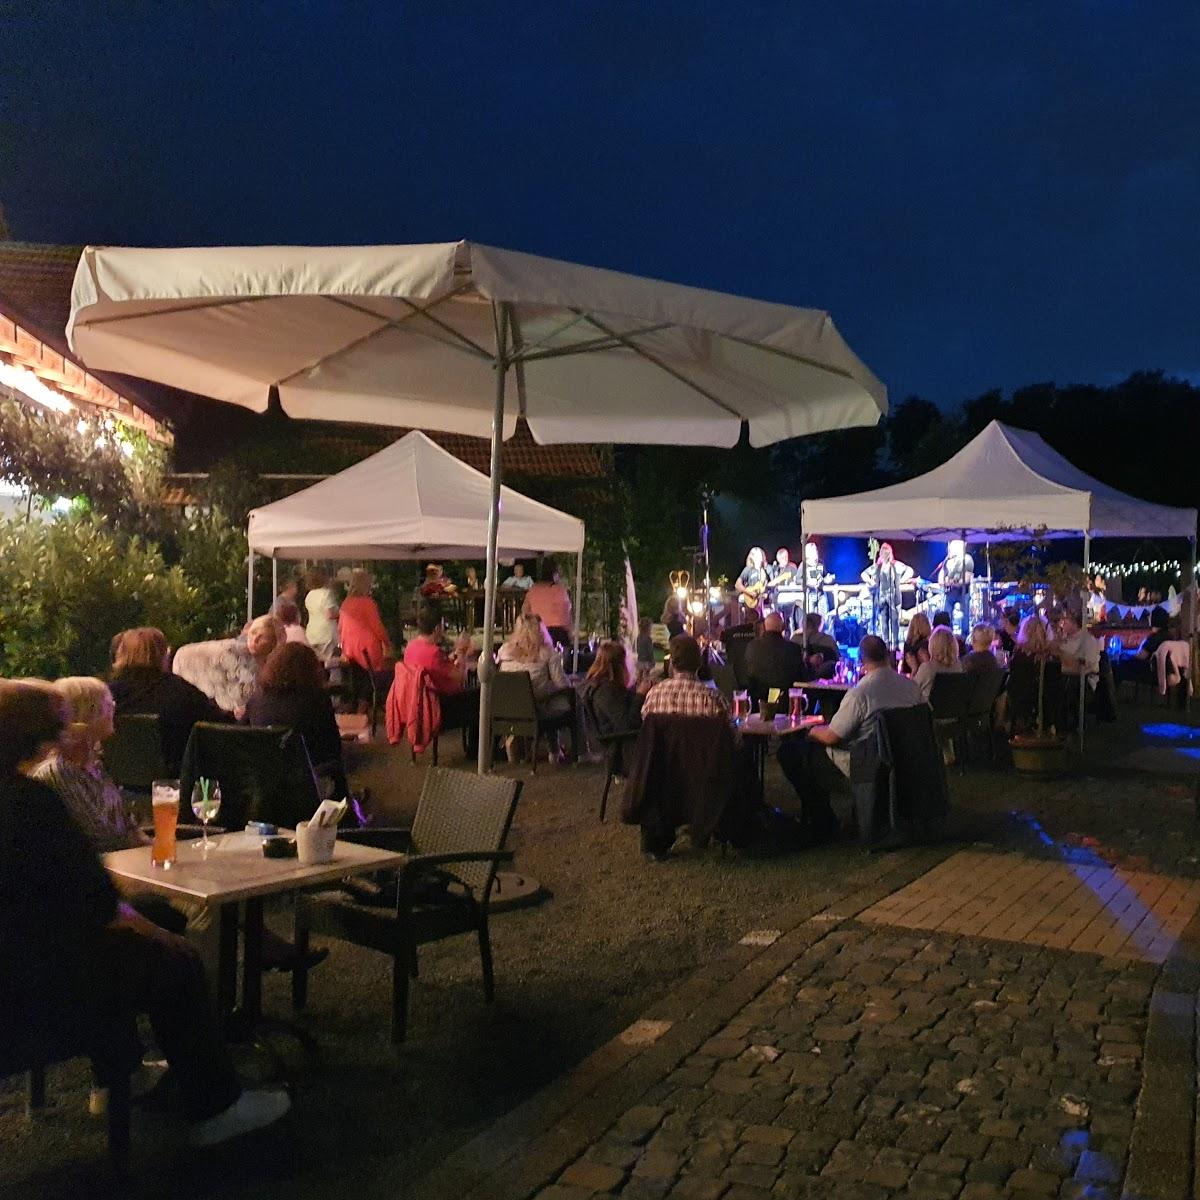 Restaurant "Bistrorante & Bar Caruso" in  Langenselbold